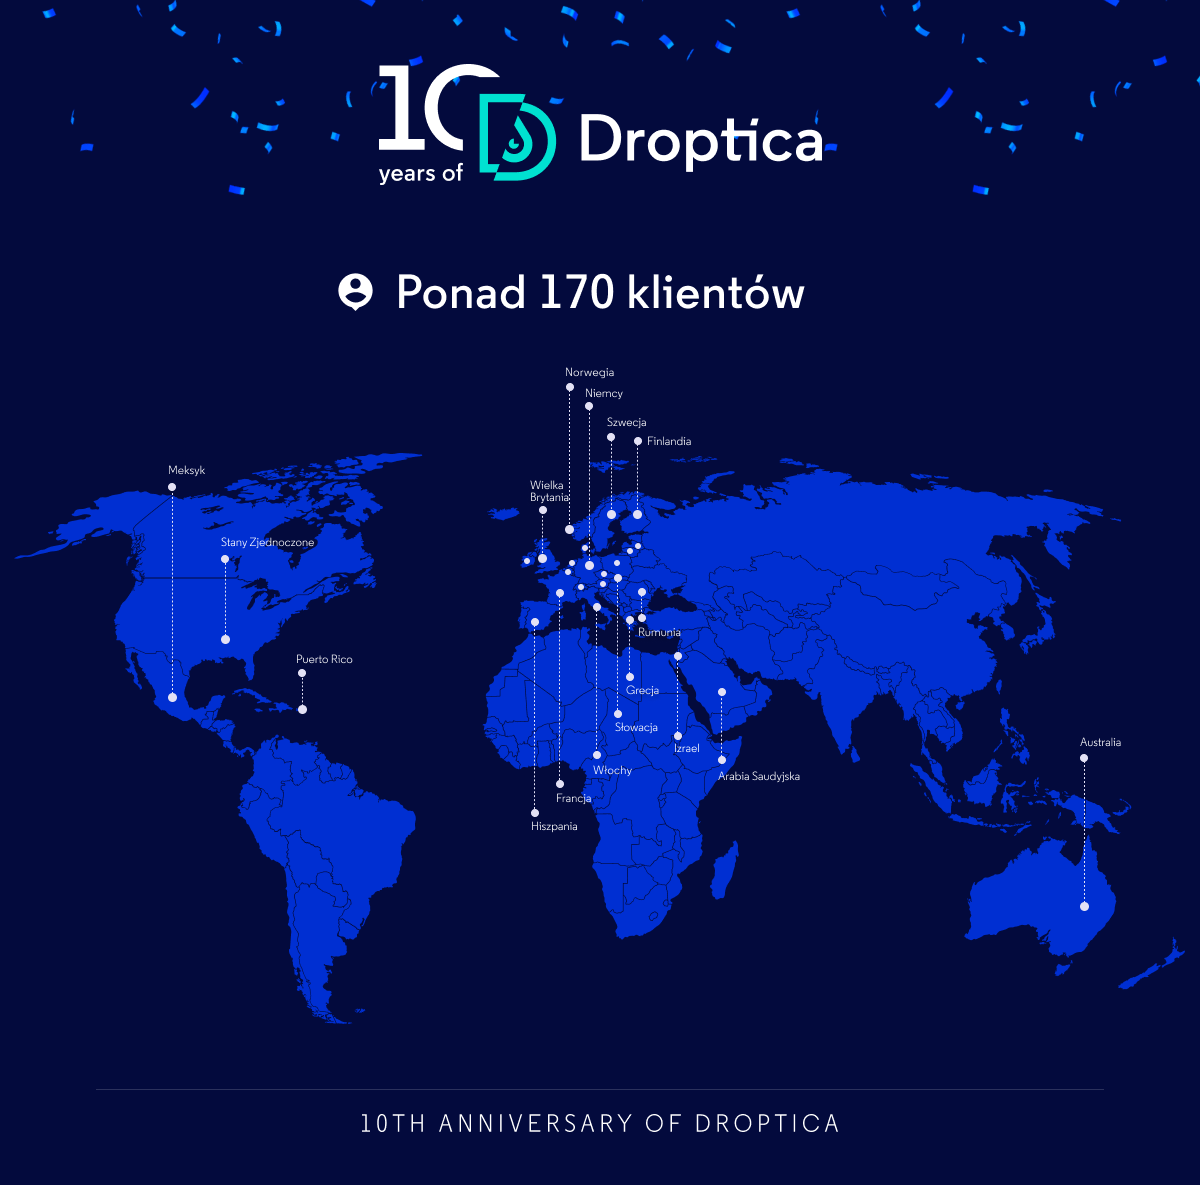 W ciągu 10 lat istnienia, Droptica współpracowała z ponad 170 klientami z całego świata